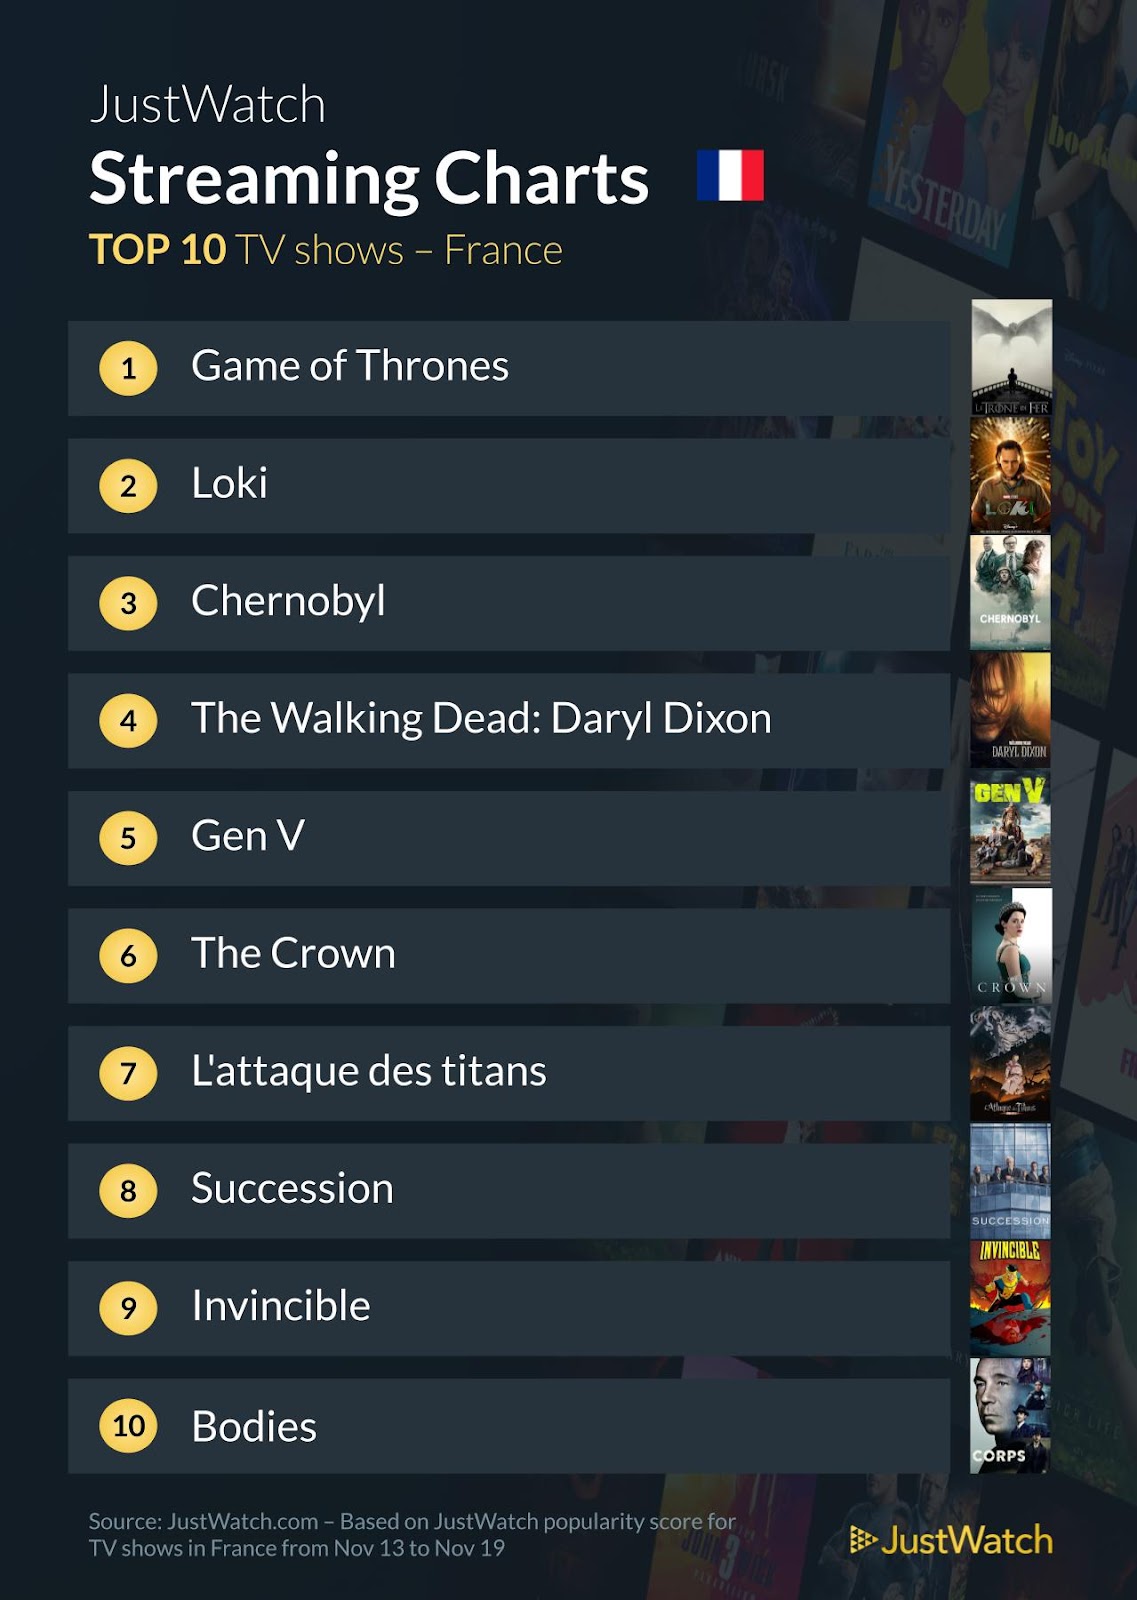 "The Killer", "Game Of Thrones", "Loki" : Le top 10 des films et séries les plus populaires de la semaine